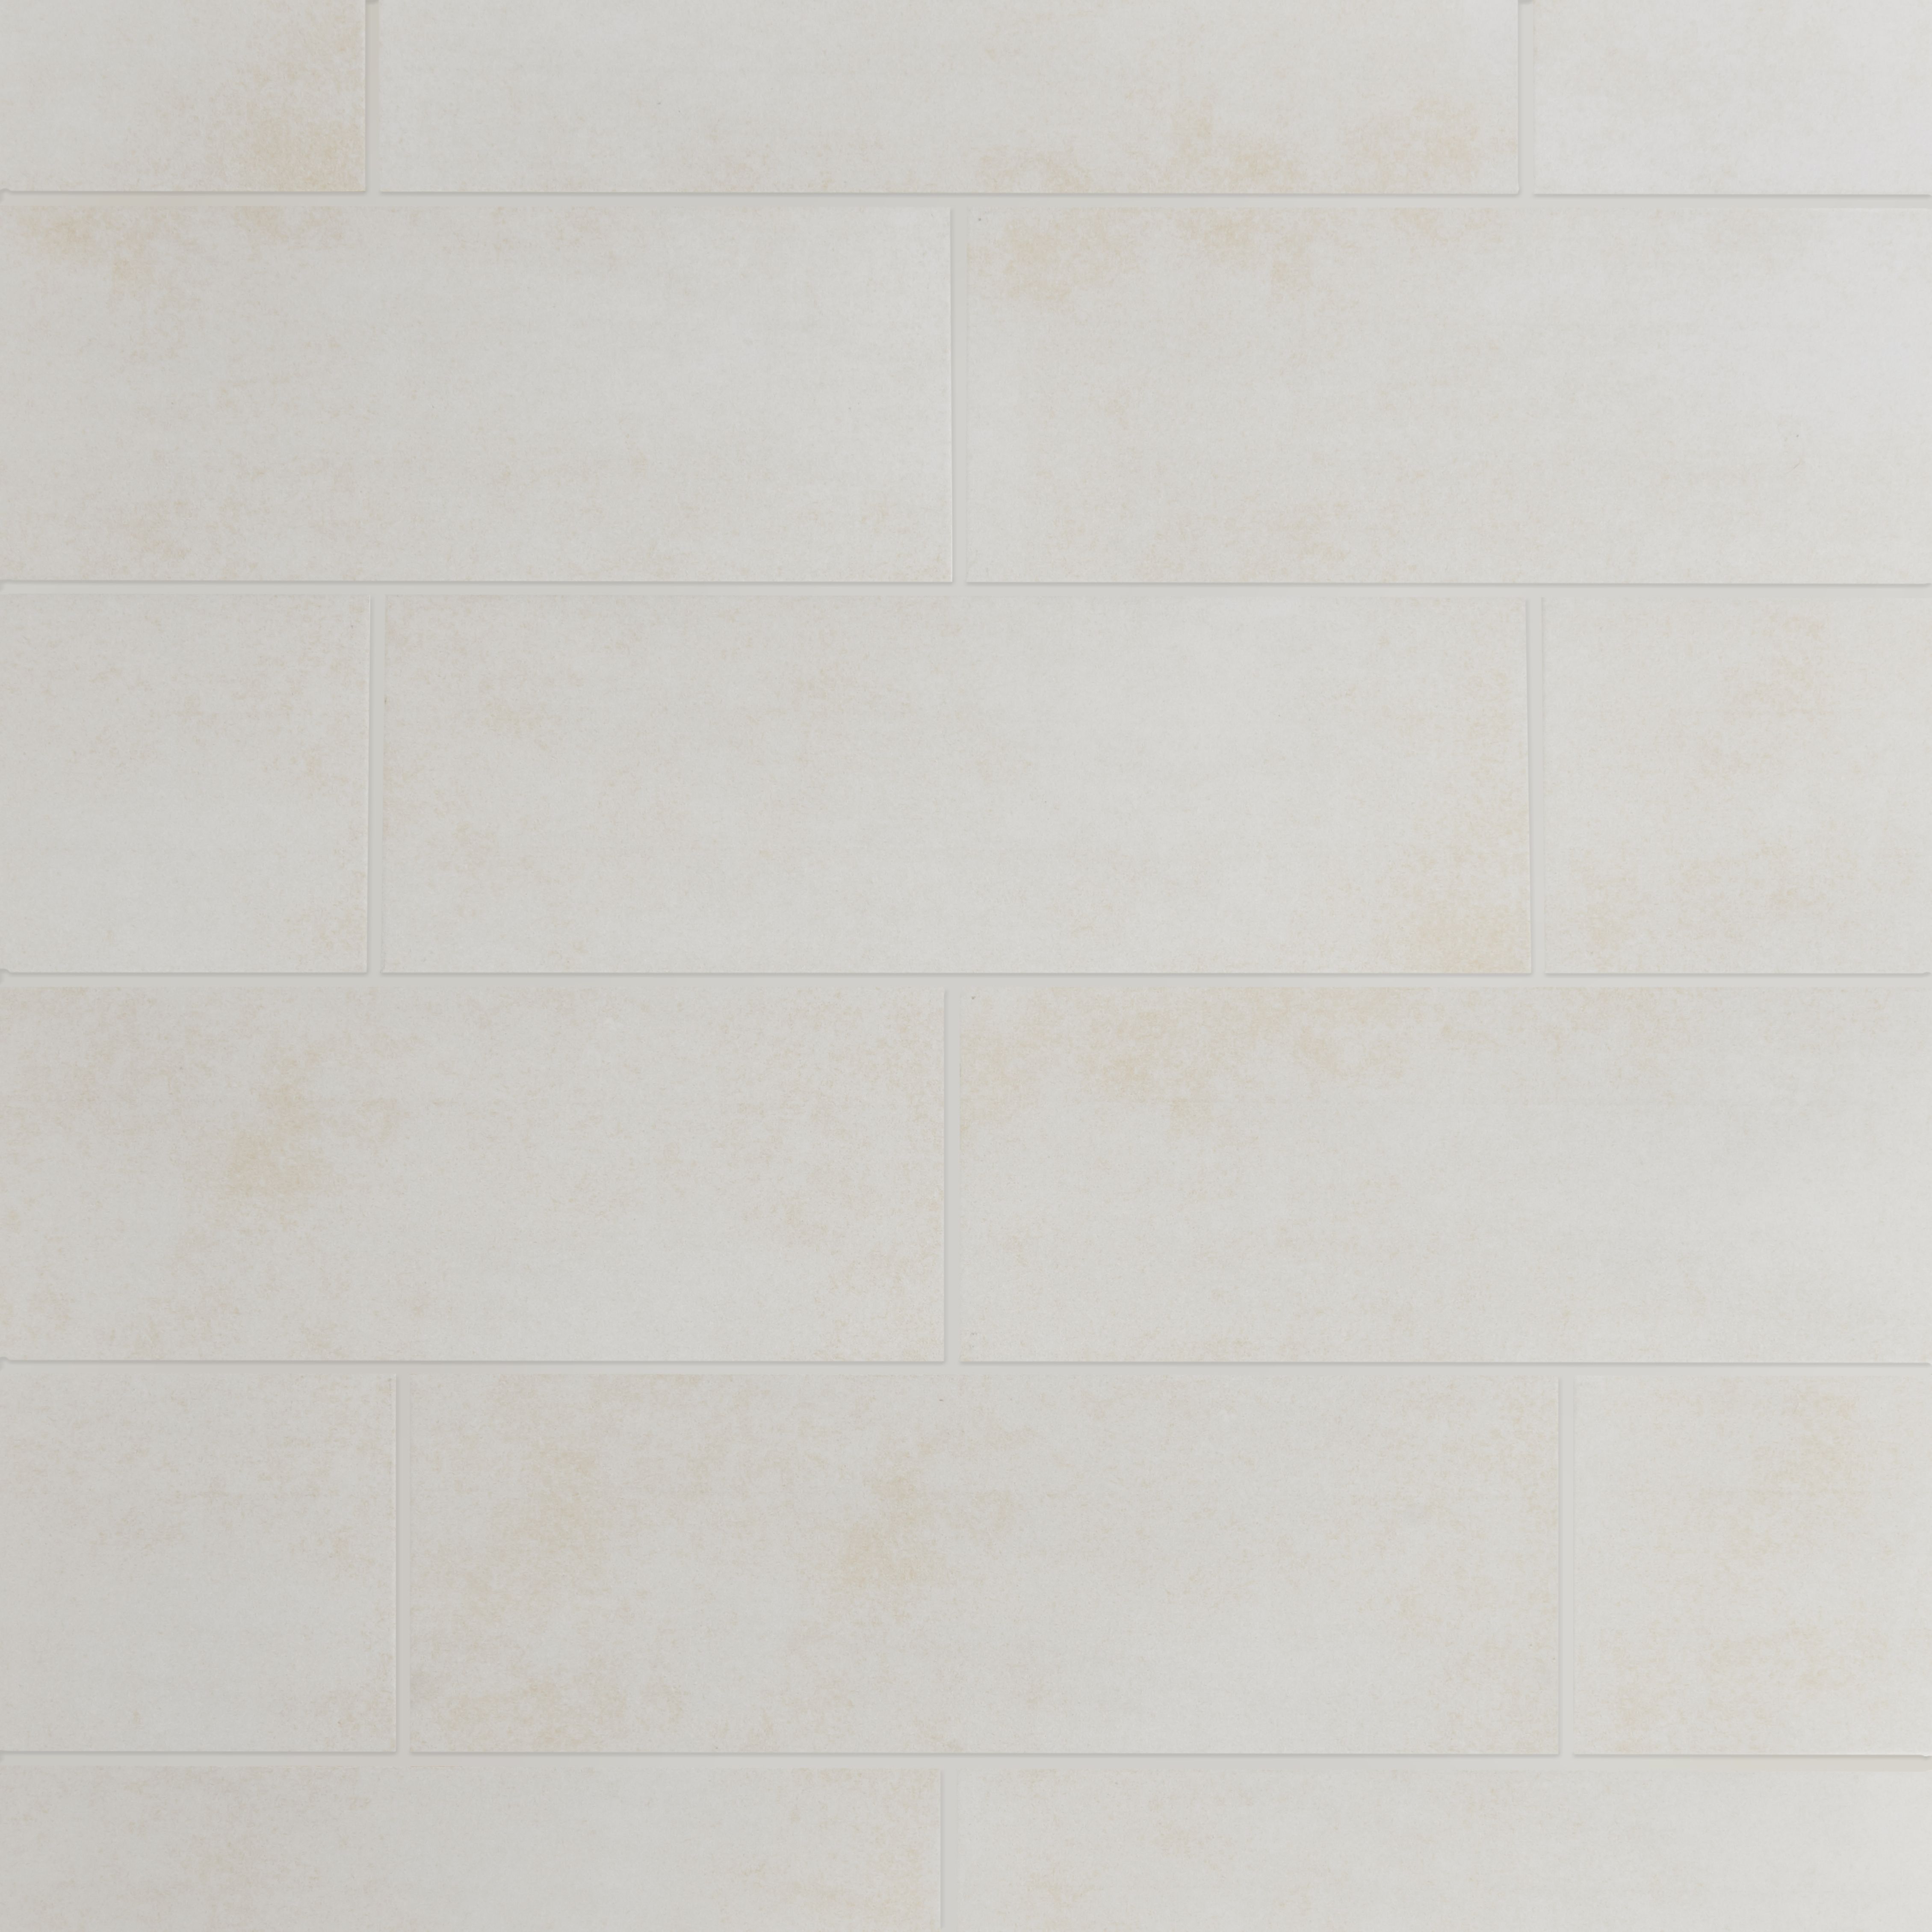 Konkrete Ivory Matt Konkrete Concrete effect Ceramic Wall Tile, Pack of 8, (L)600mm (W)200mm